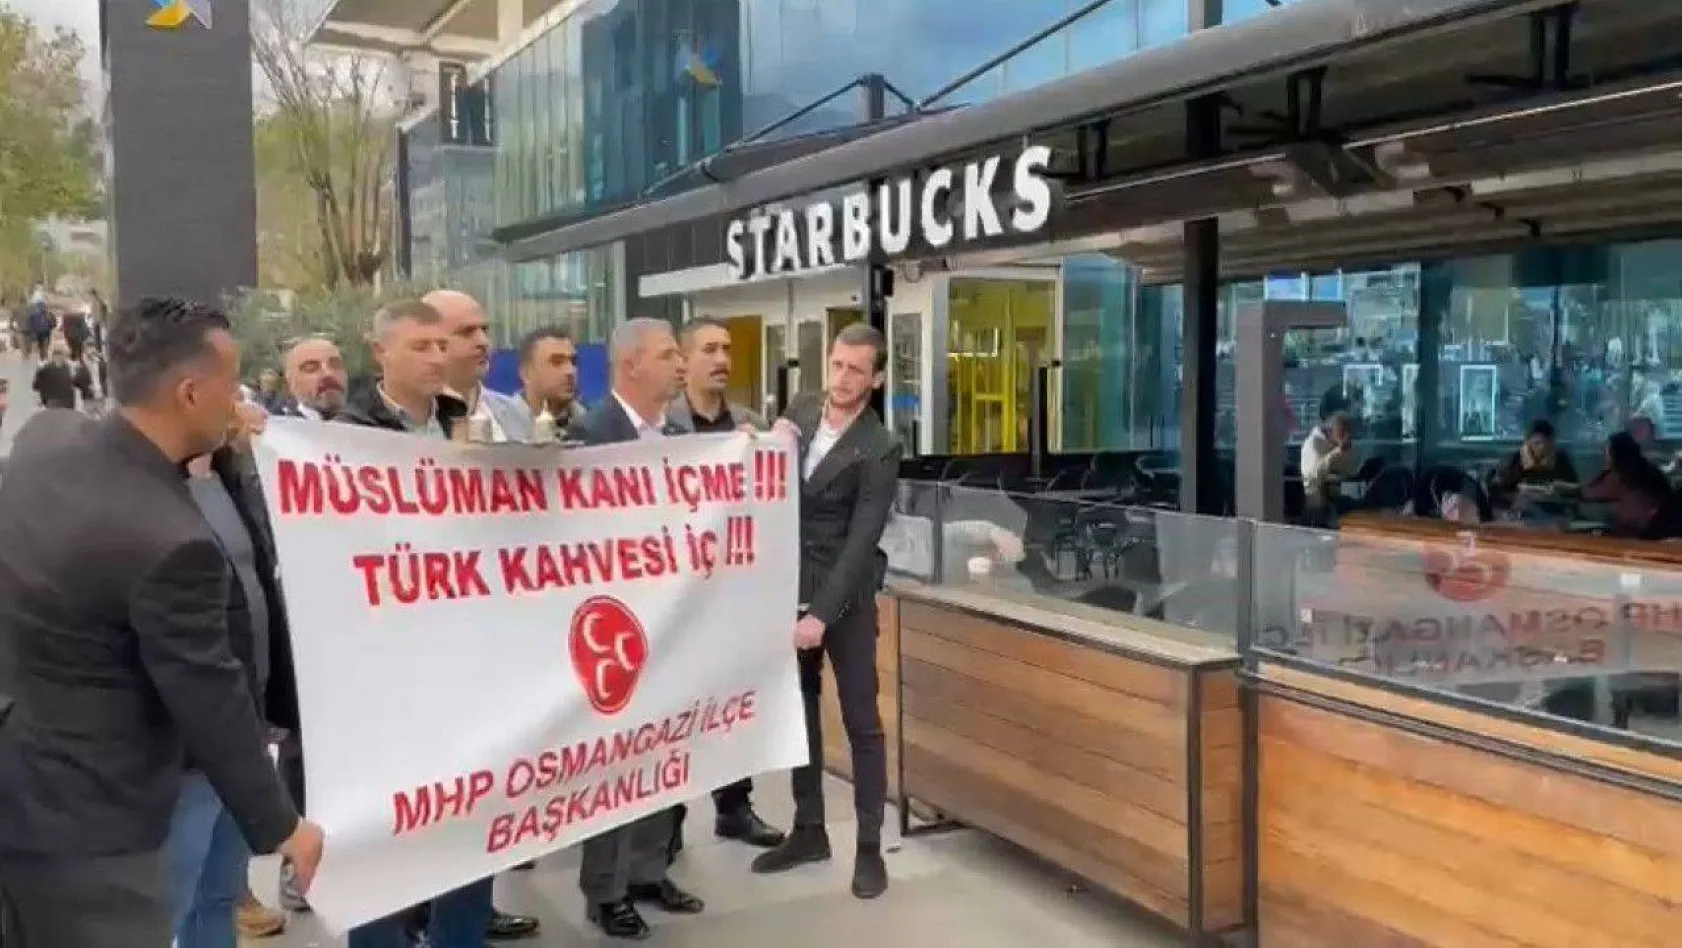 MHP'liler Starbucks'taki gençleri Türk kahvesi içmeye davet etti